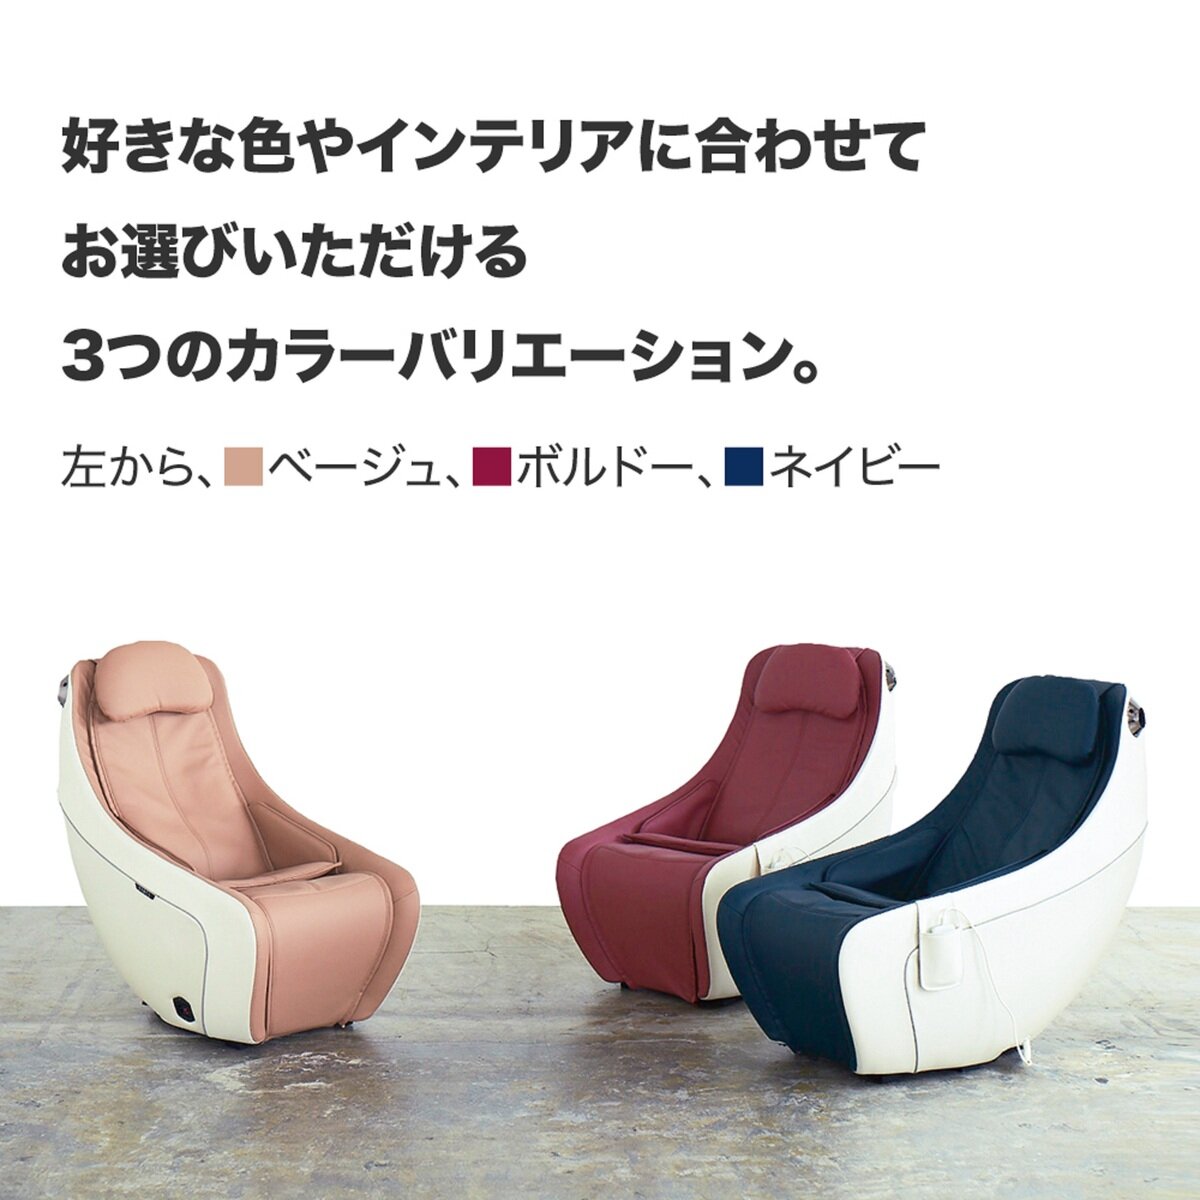 シンカ コンパクトマッサージチェア サーク | Costco Japan